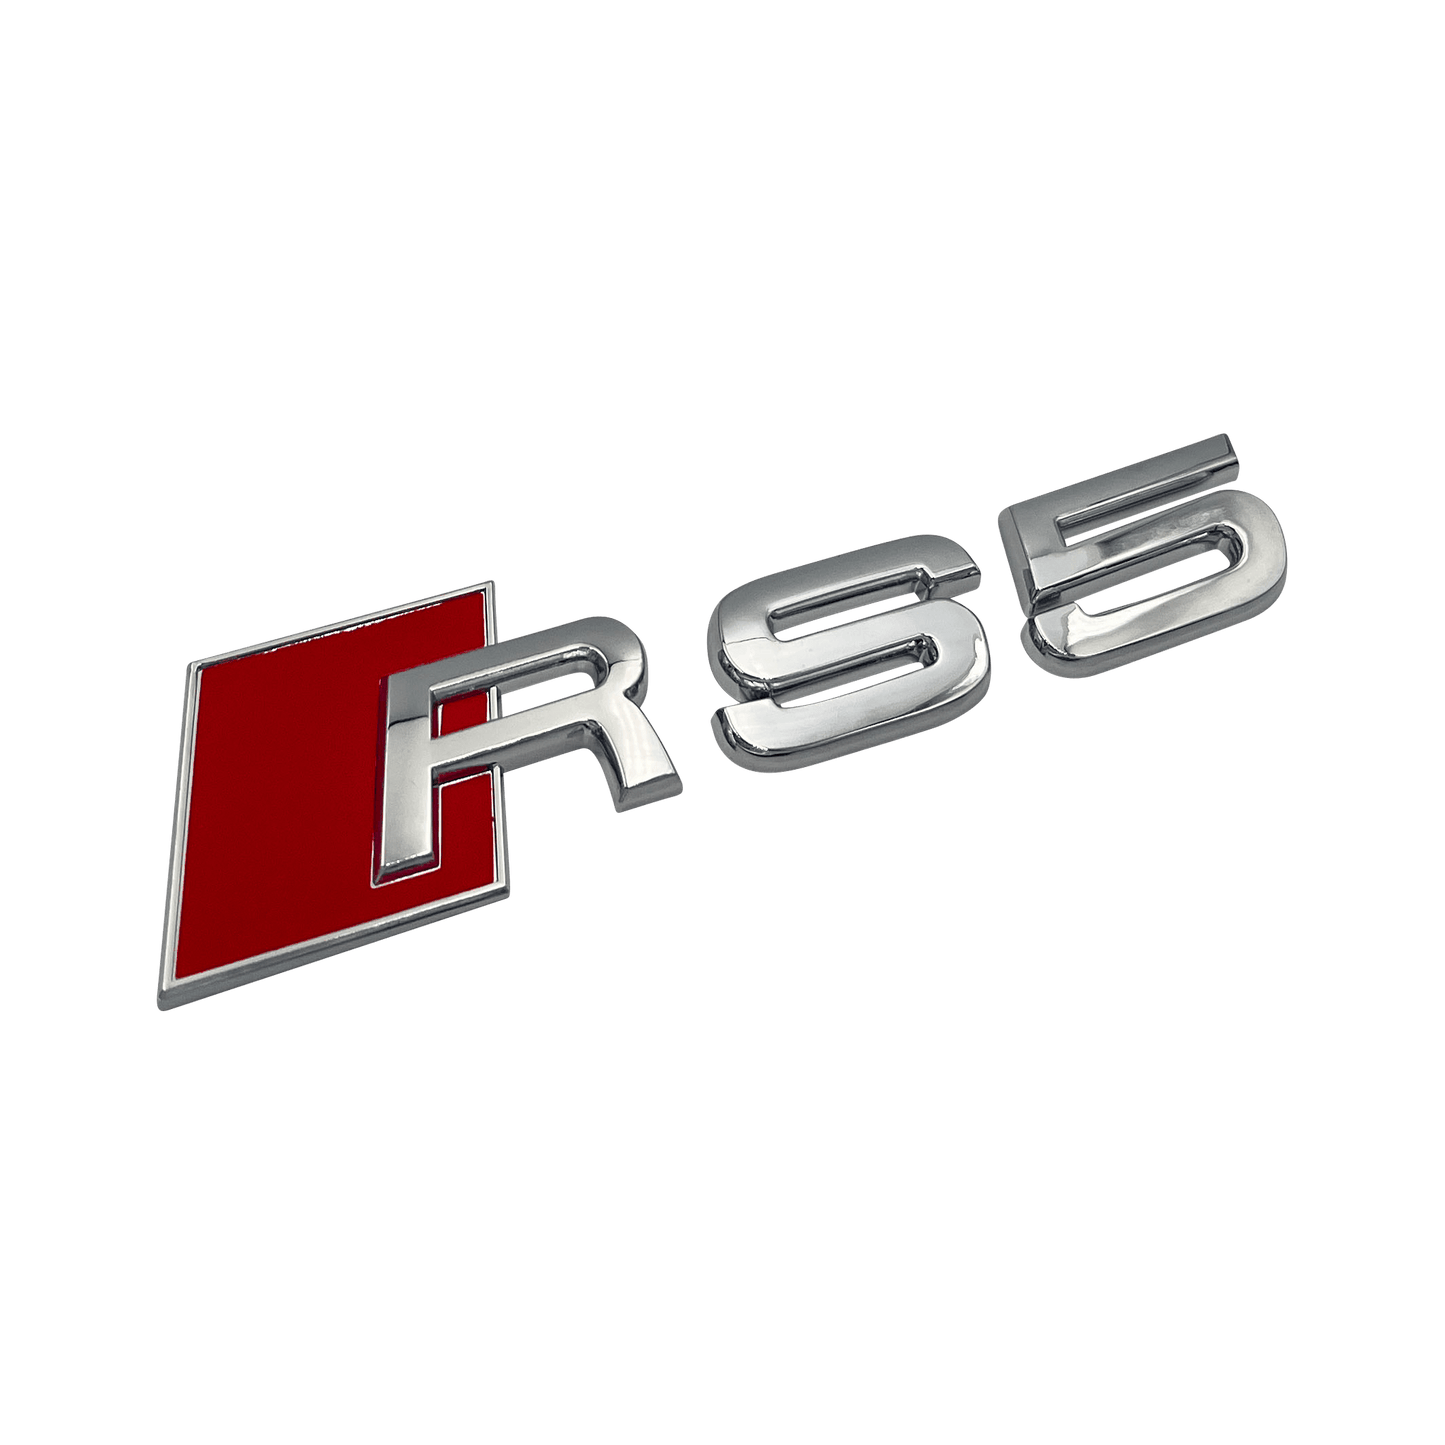 Chrome Audi RS5 Rear Emblem Badge